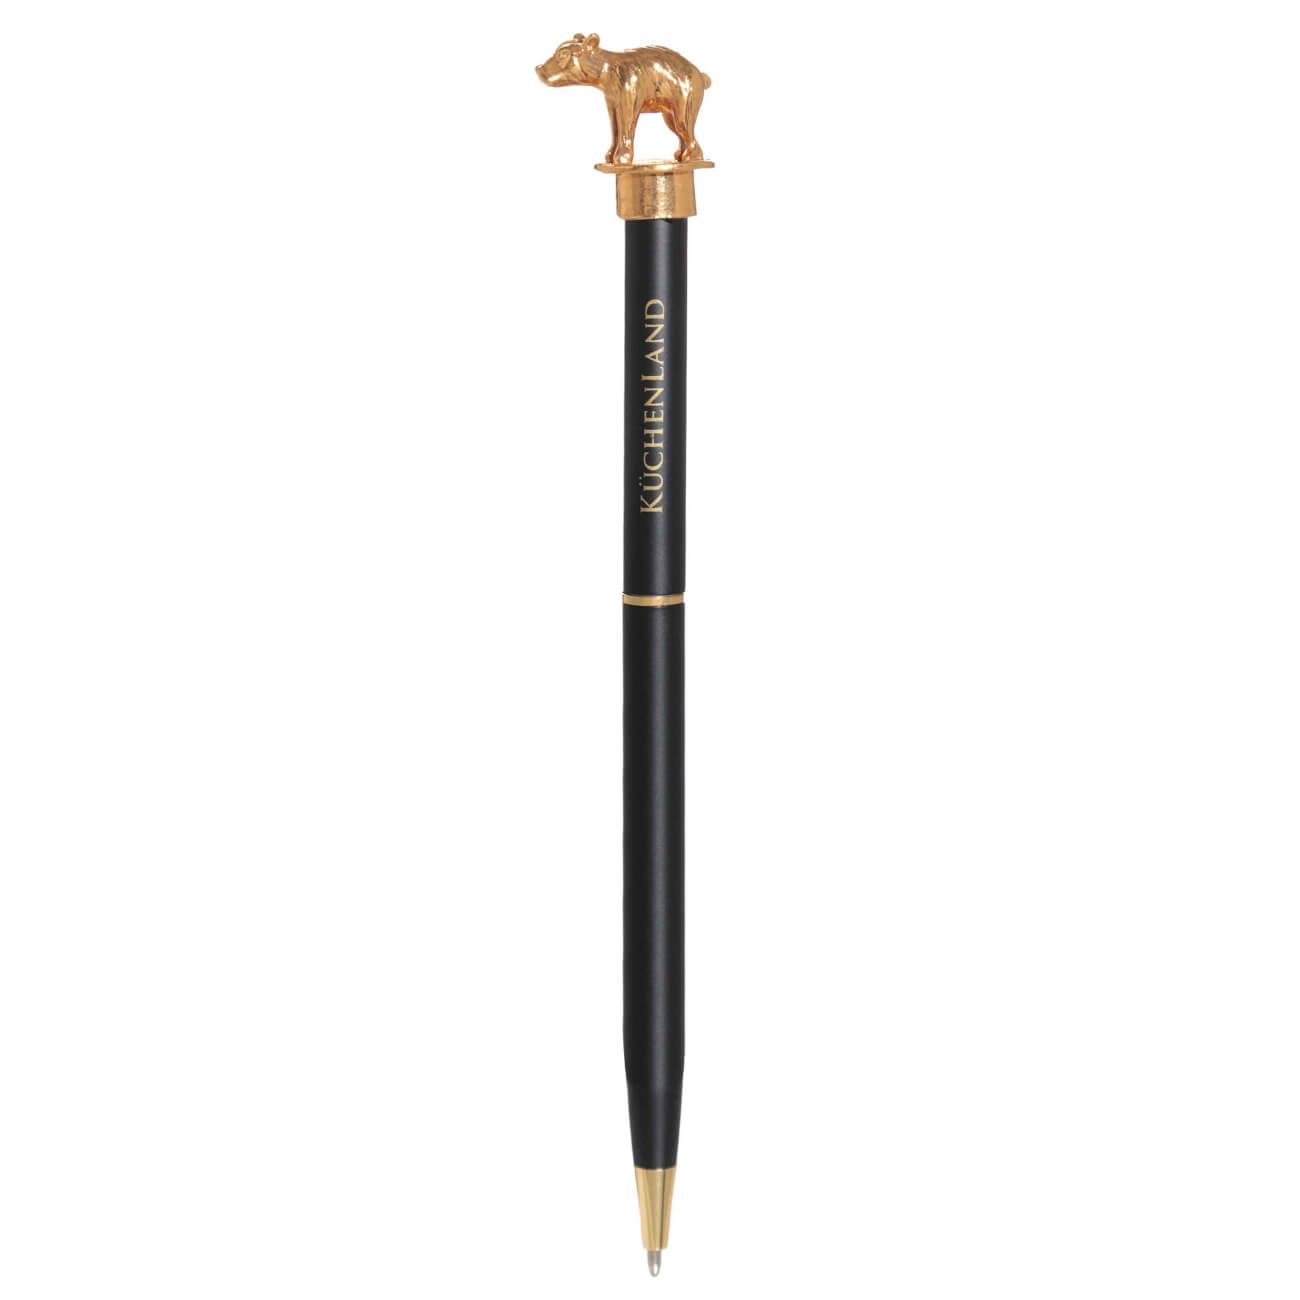 Ручка шариковая, 14 см, с фигуркой, сталь, черная, Медведь, Draw figure ручка подарочная шариковая в кожзам футляре поворотная черная с золотом